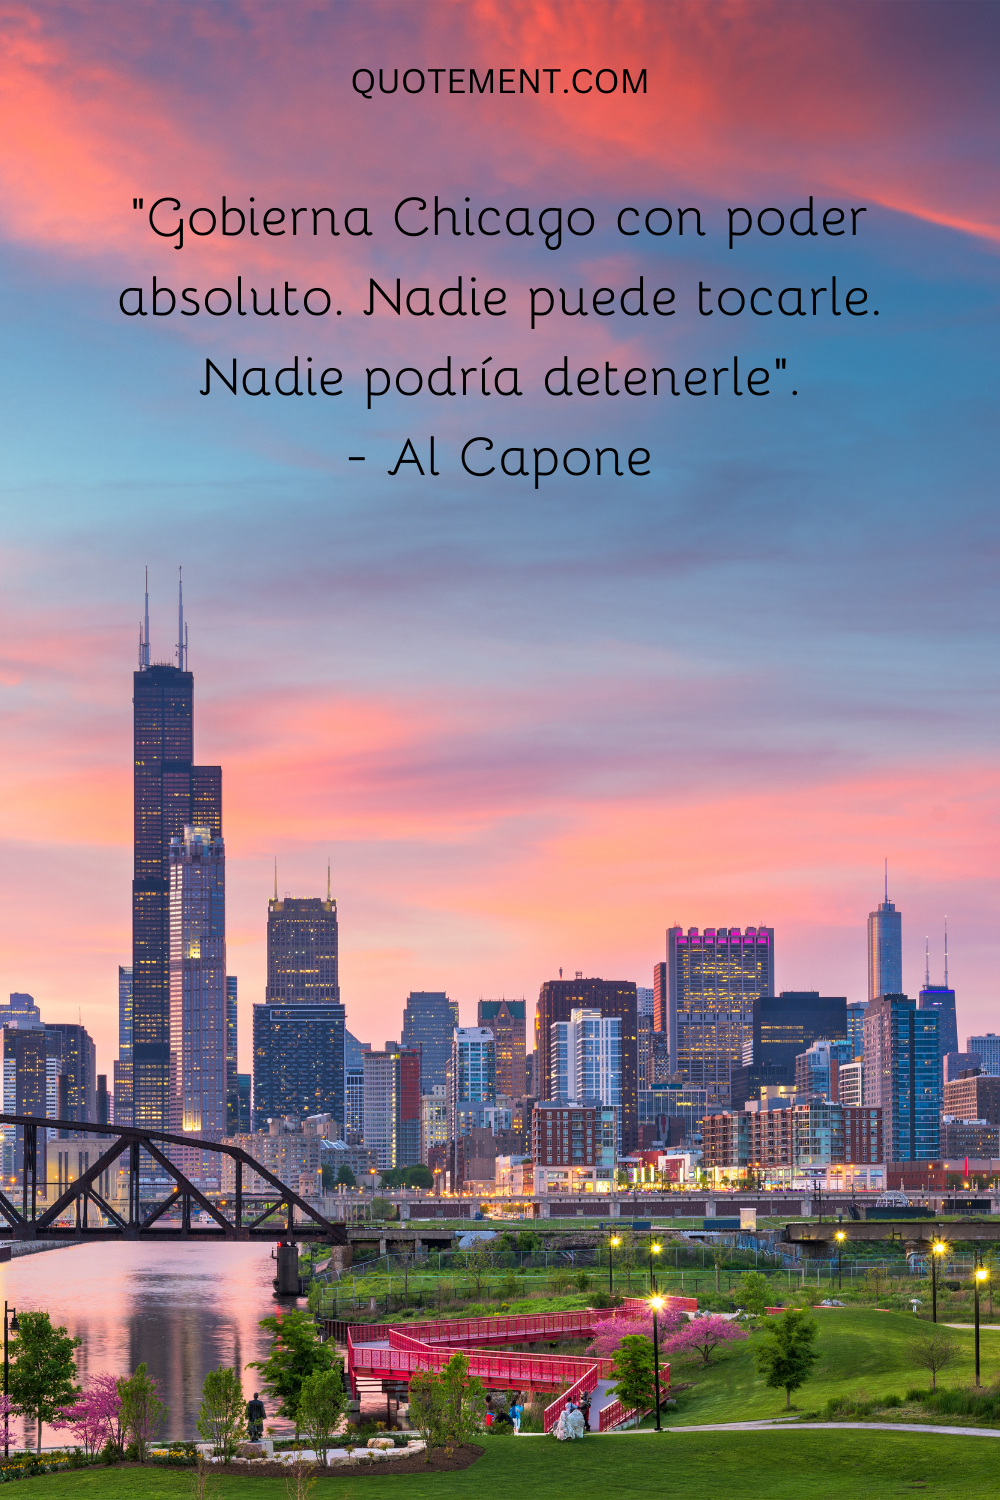 "Gobierna Chicago con poder absoluto. Nadie puede tocarle. Nadie podría detenerlo". - Al Capone